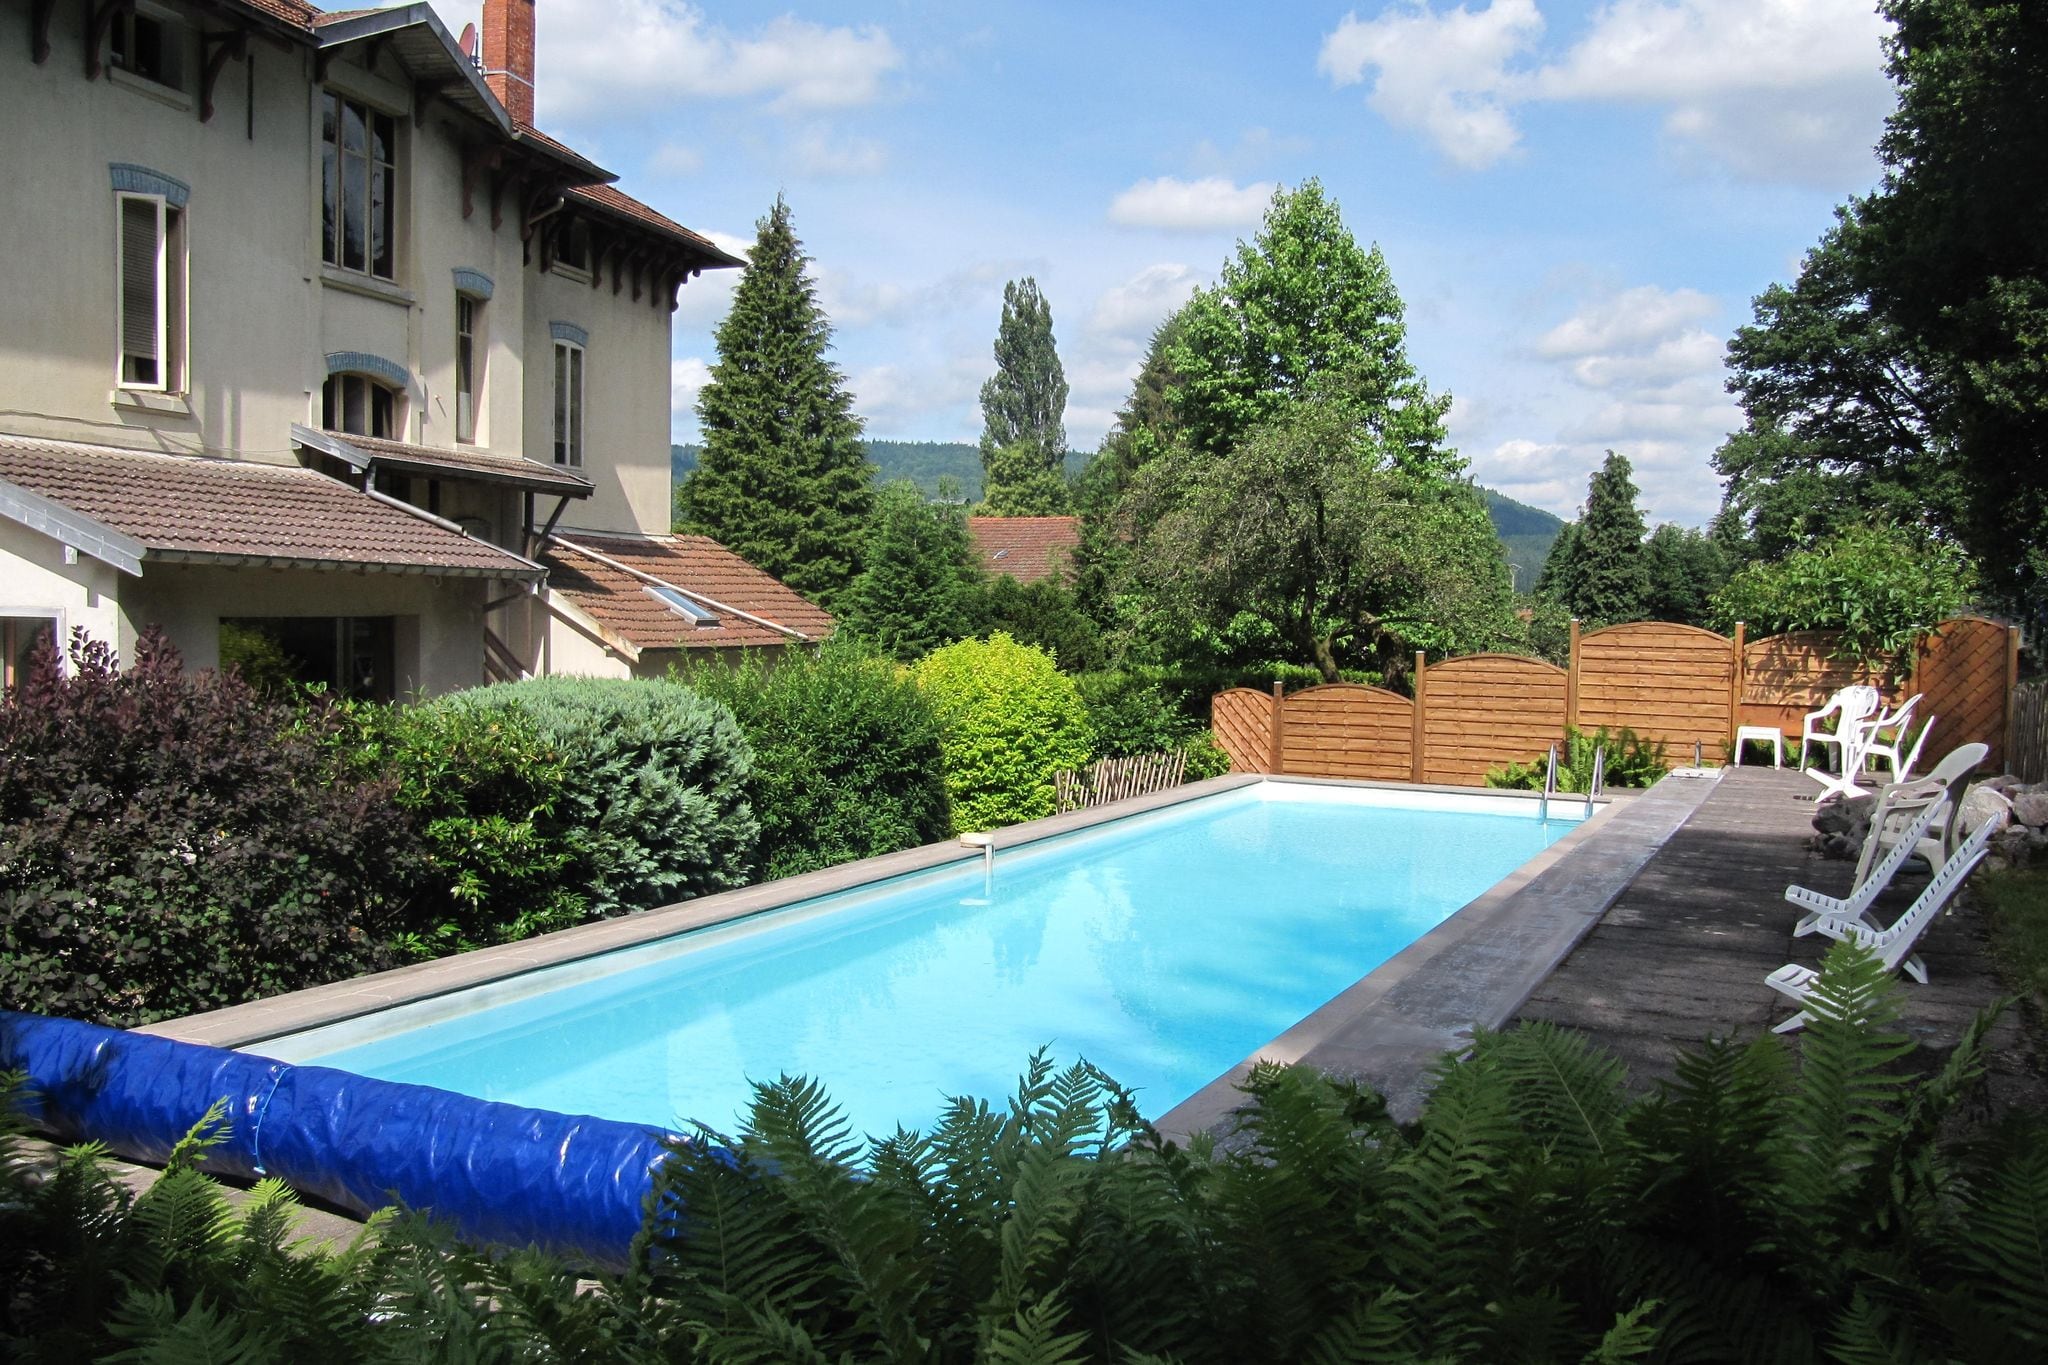 Charmante vakantiewoning met zwembad en privé tuin centraal gelegen in Vogezen